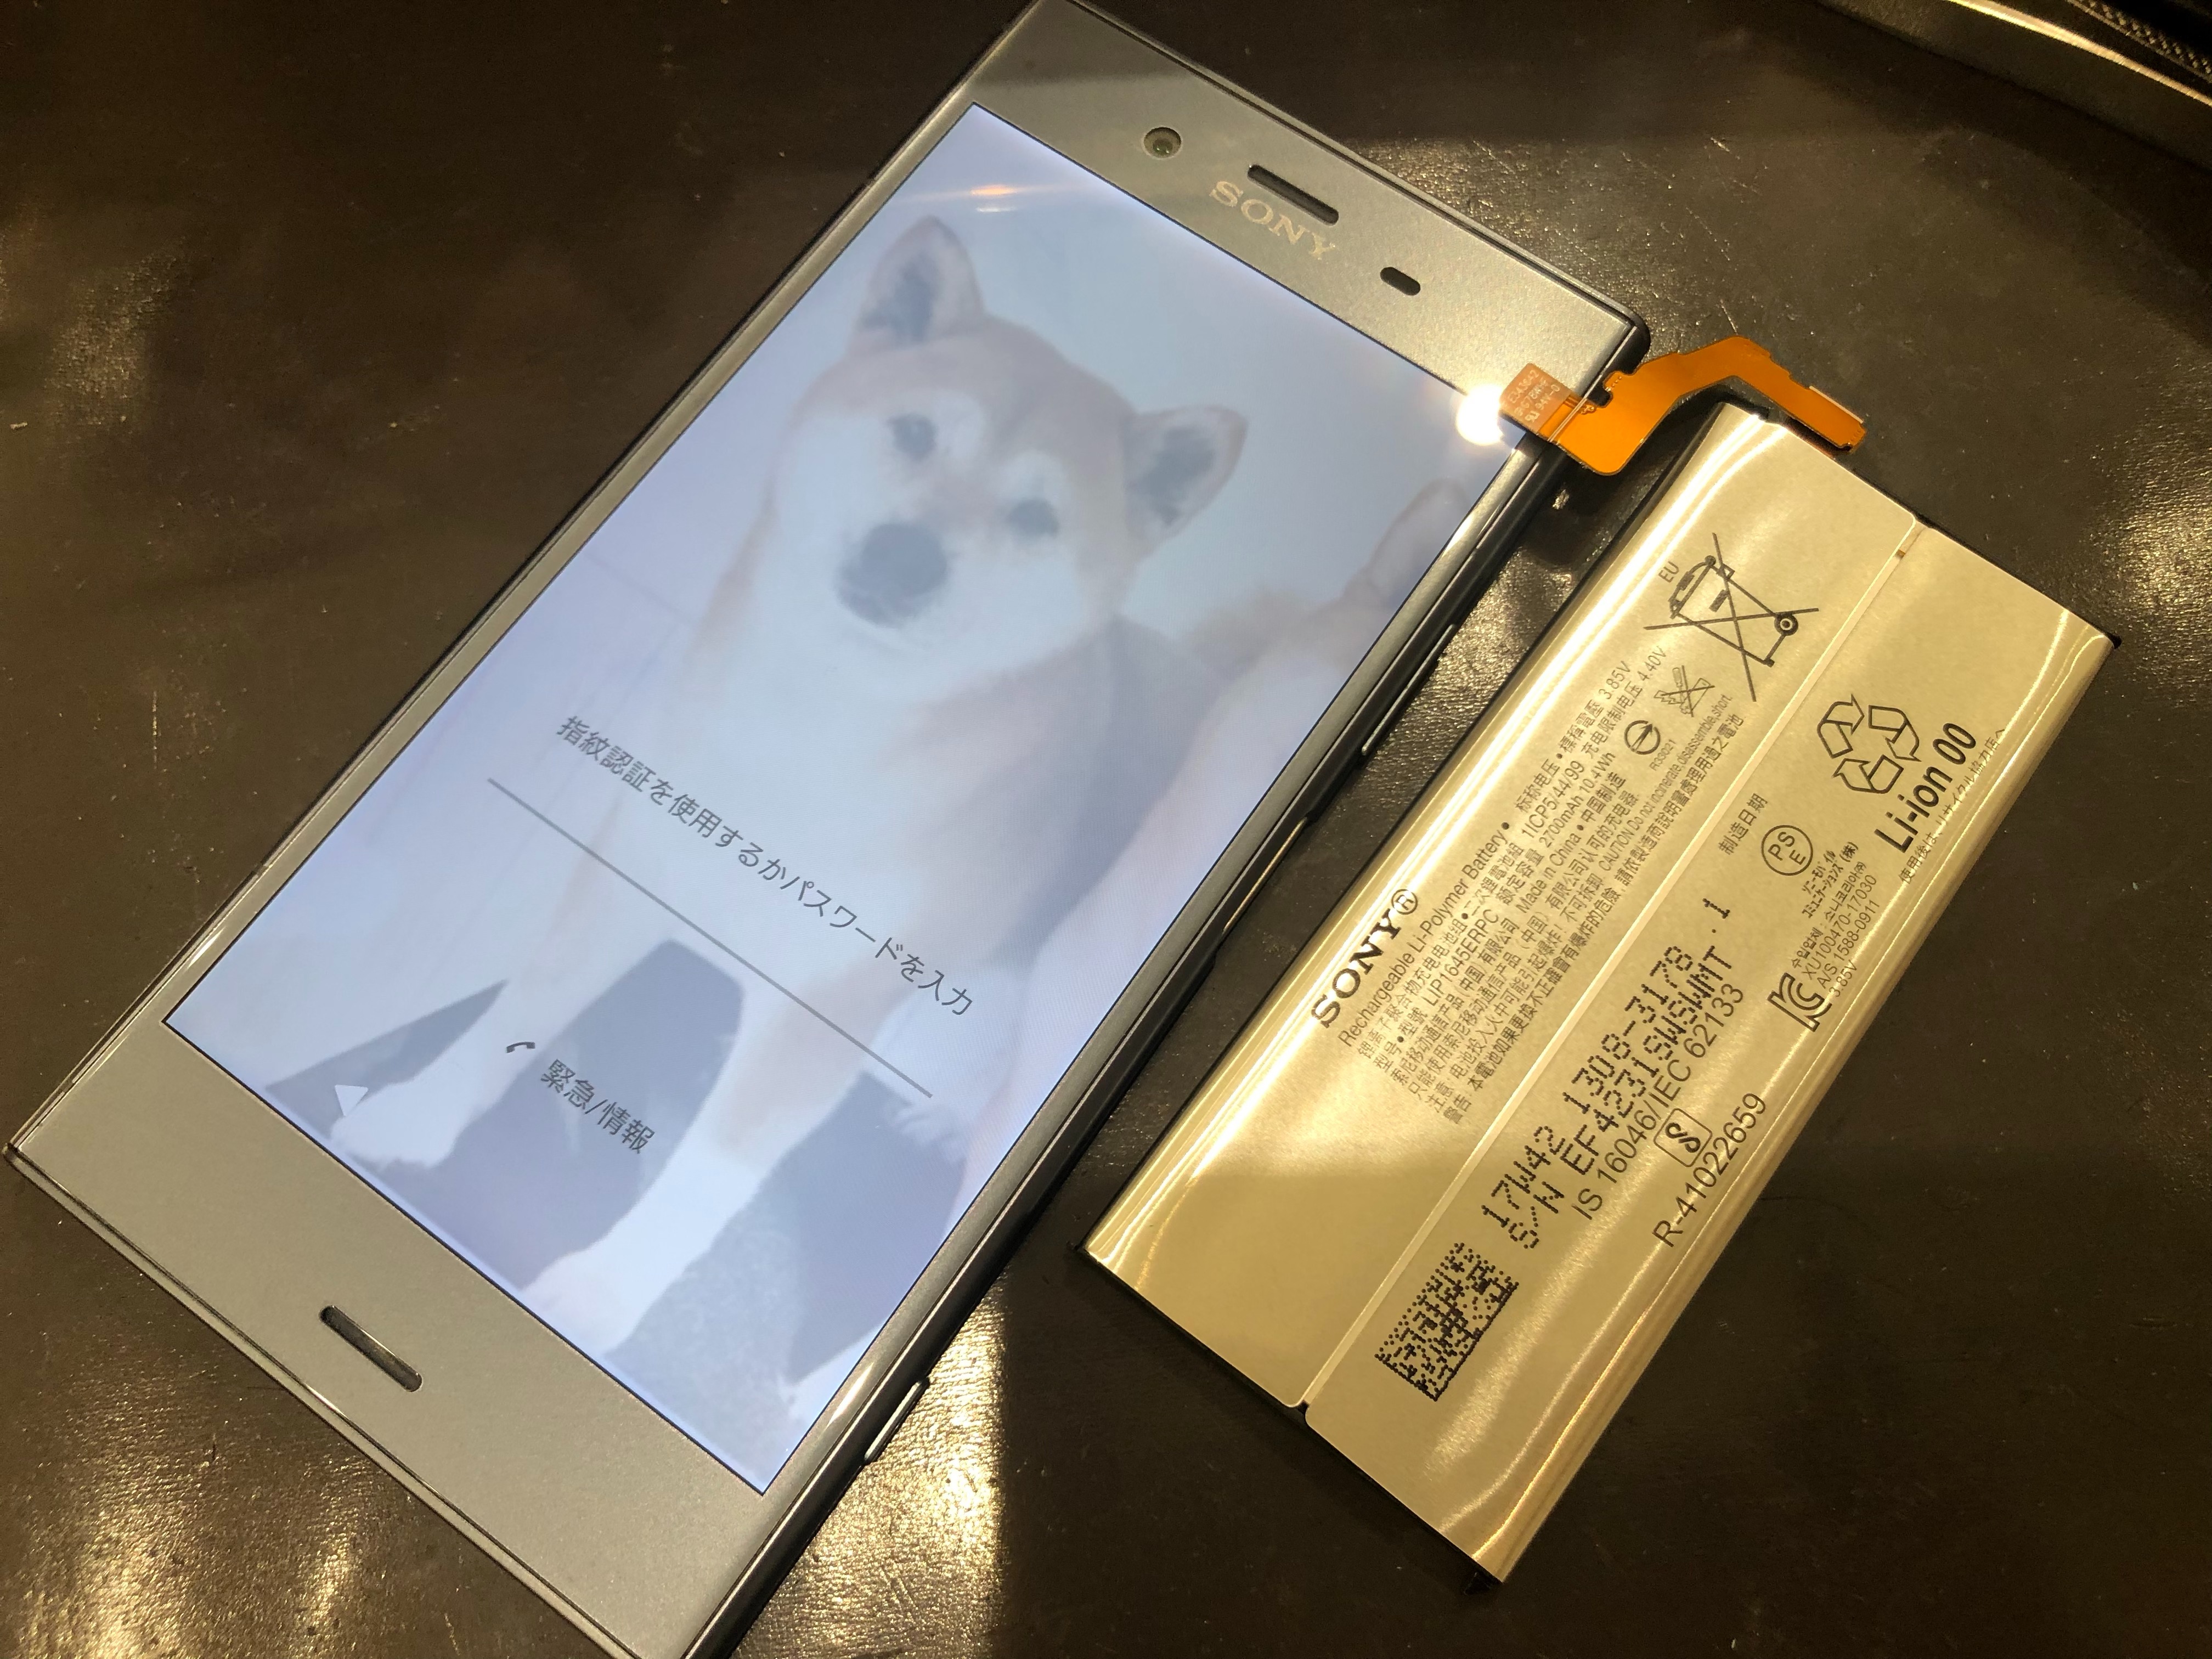 ドコモxperiaxz1 So 01k のバッテリー交換を買い物ついでに短時間で完了 Xperia Galaxy Zenfone Huawei Nexus修理のアンドロイドホスピタル